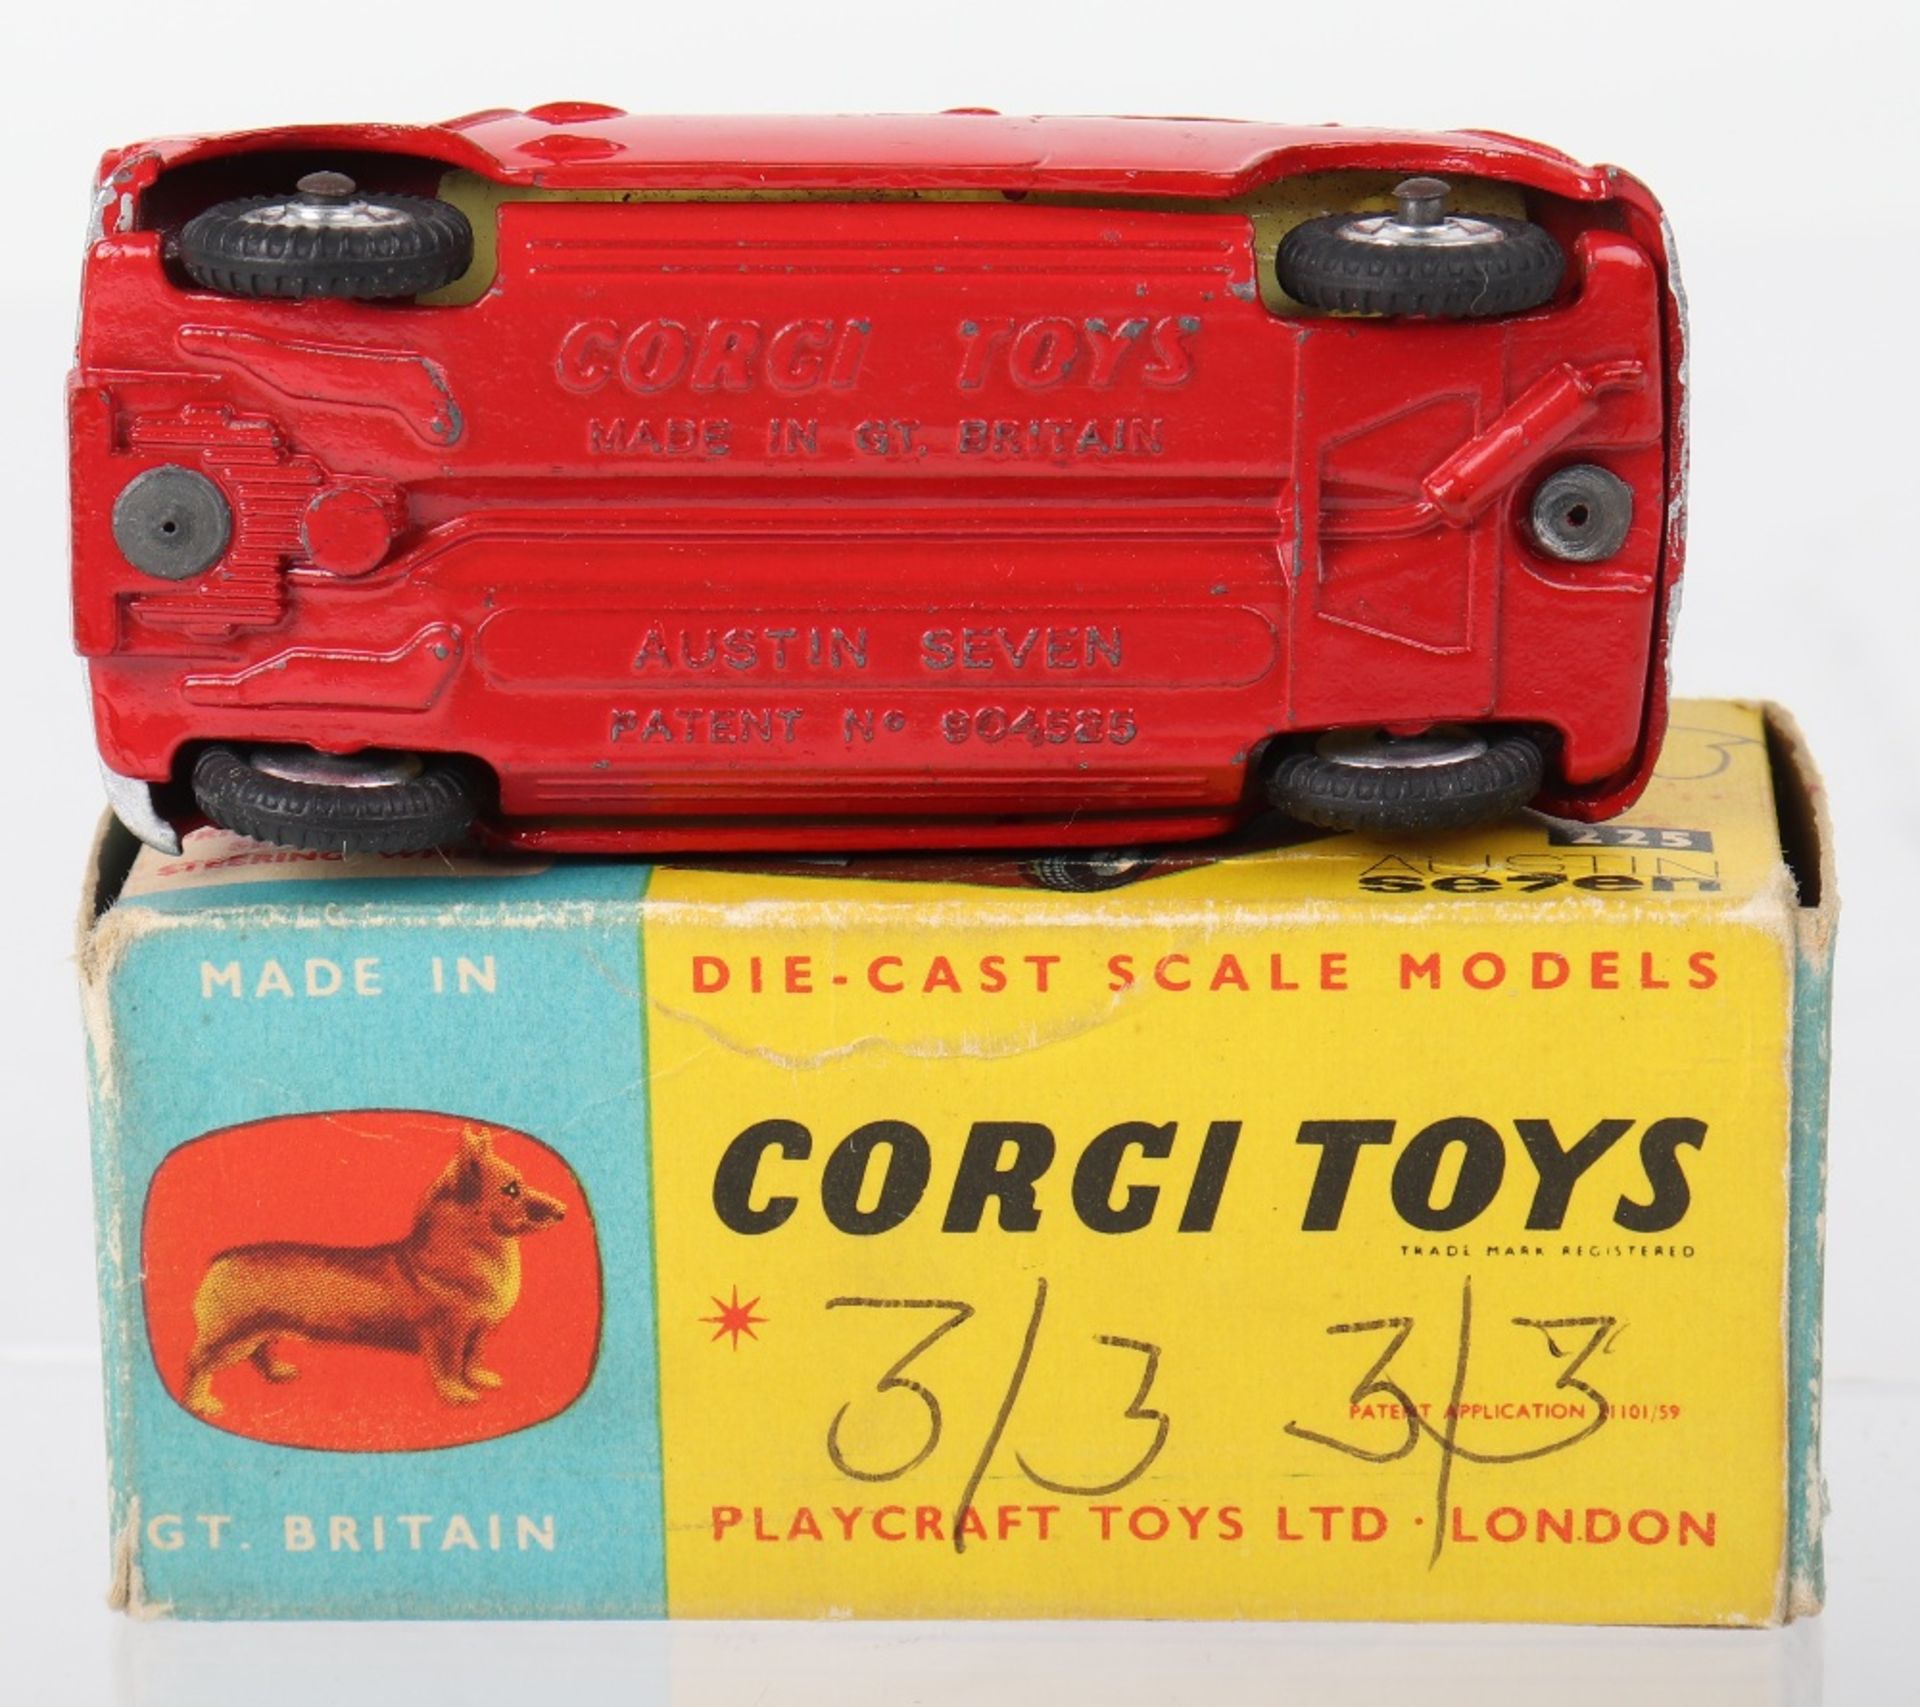 Corgi Toys 225 Austin Seven Mini - Bild 3 aus 5